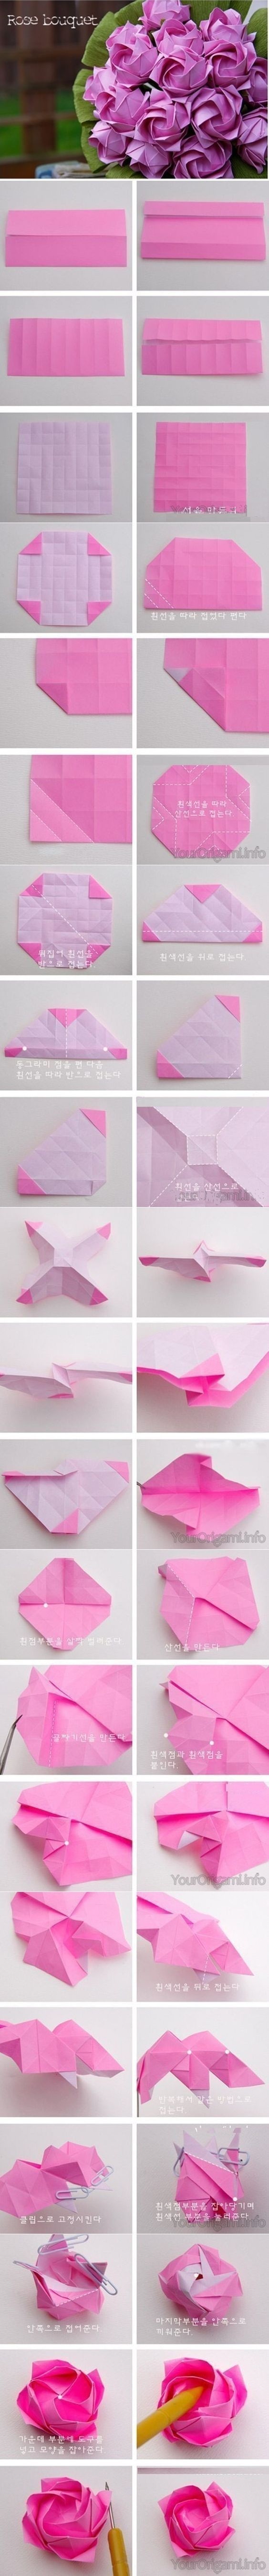 букет роз оригами